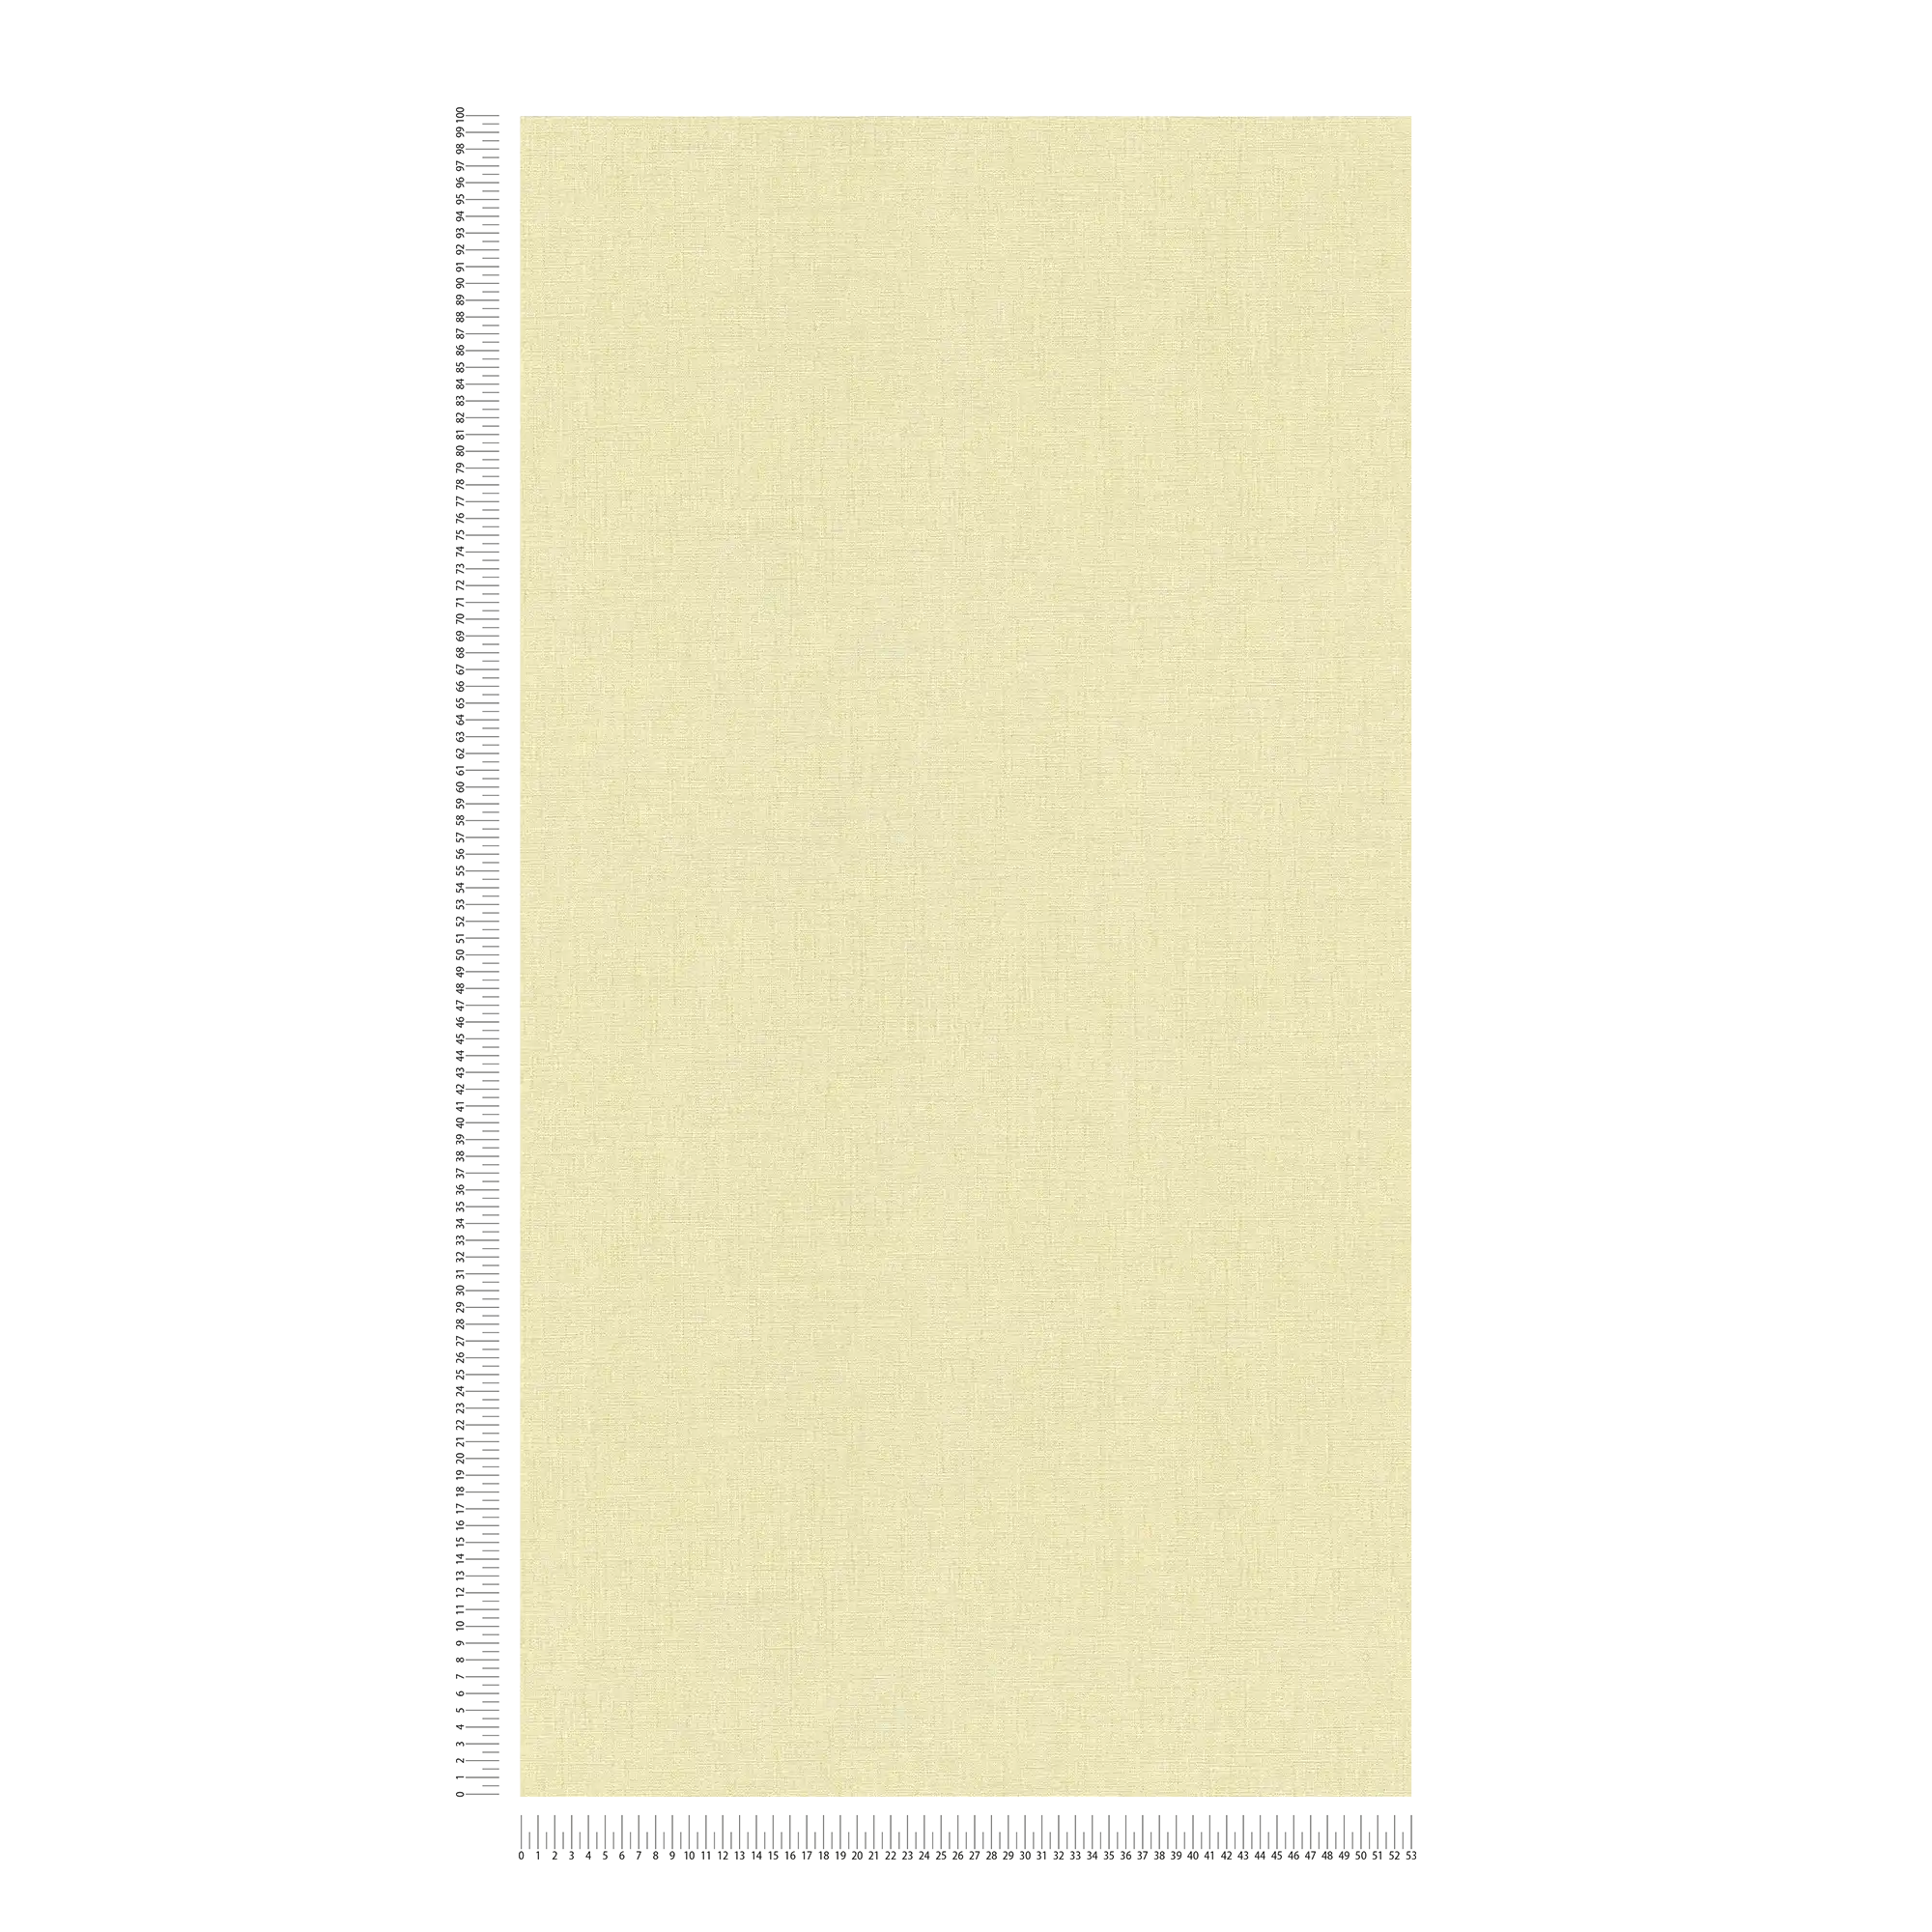             Lightly textured plain wallpaper in a matt look - yellow, green
        